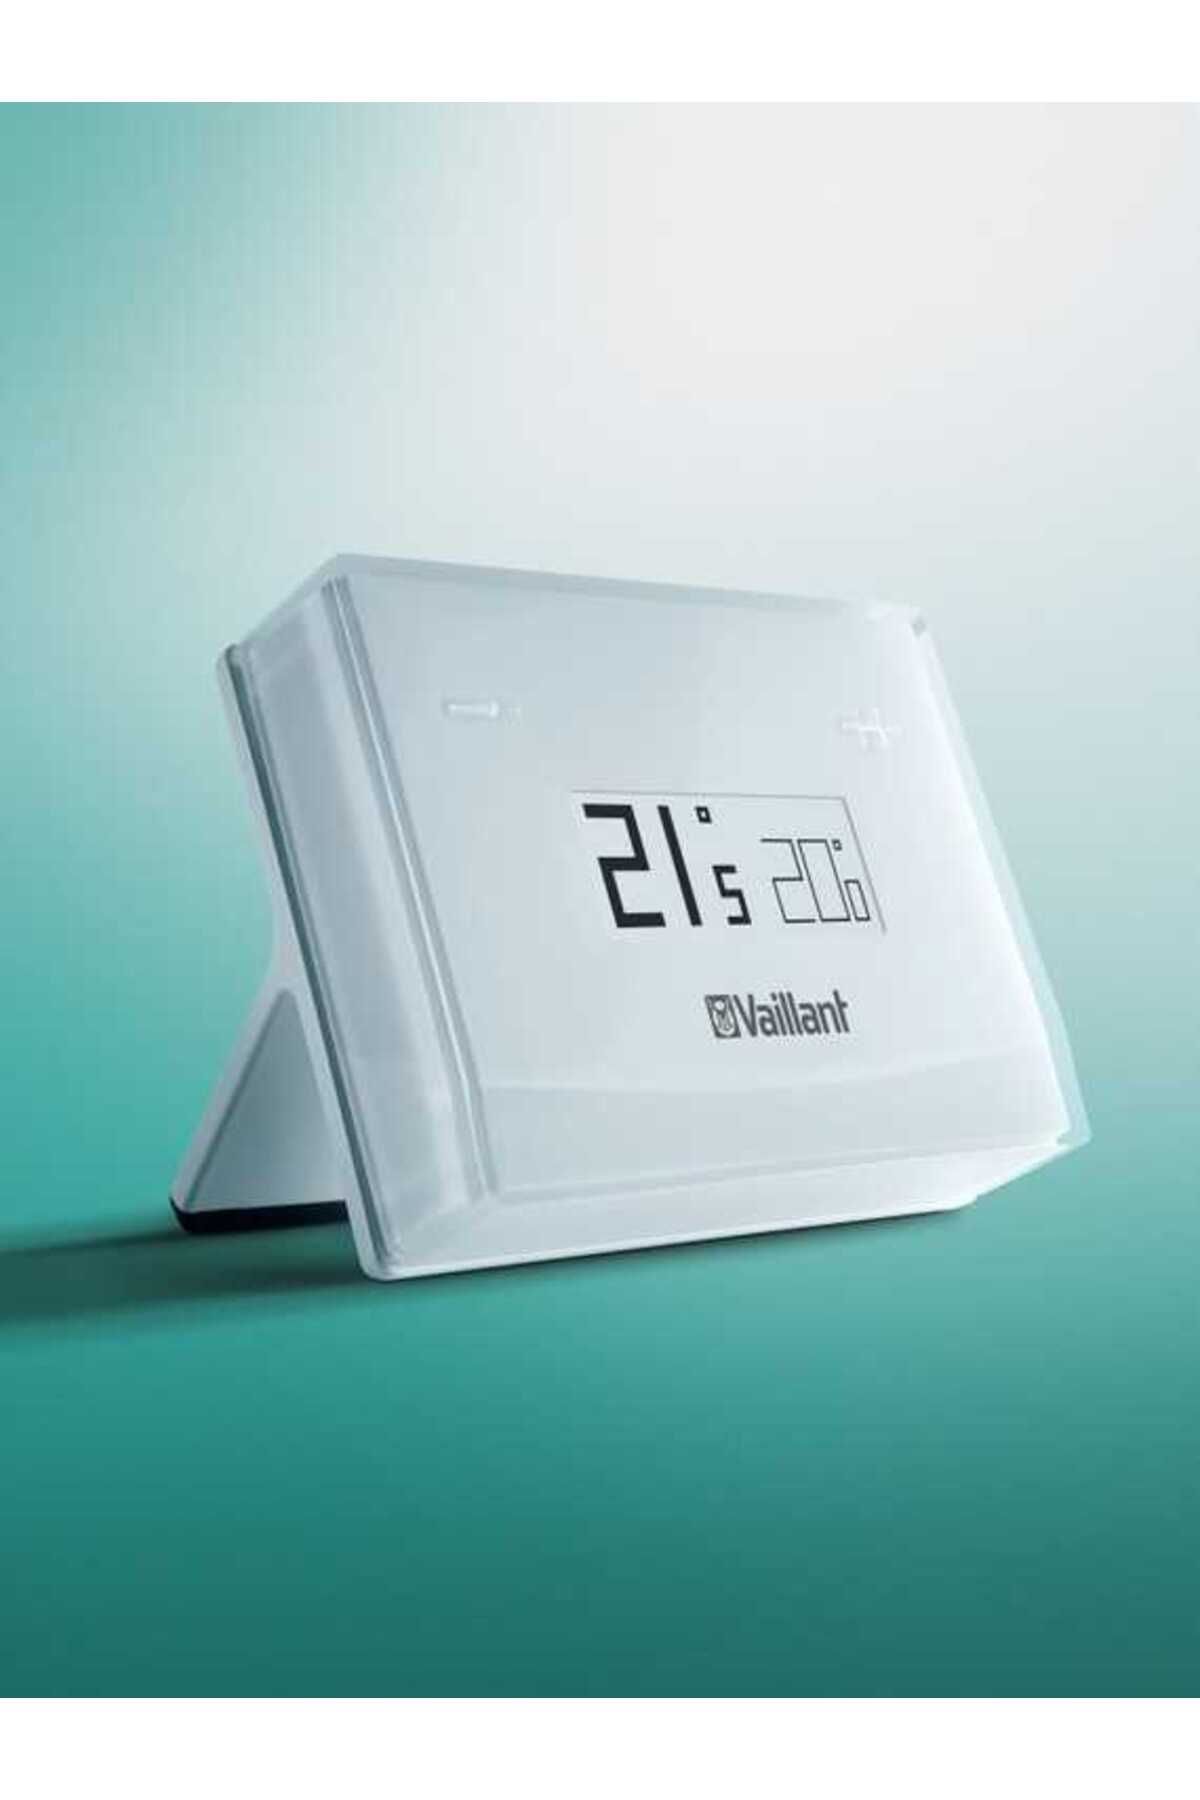 Vaillant Erelax Wifi Kontrollü Akıllı Oda Termostatı eRELAX